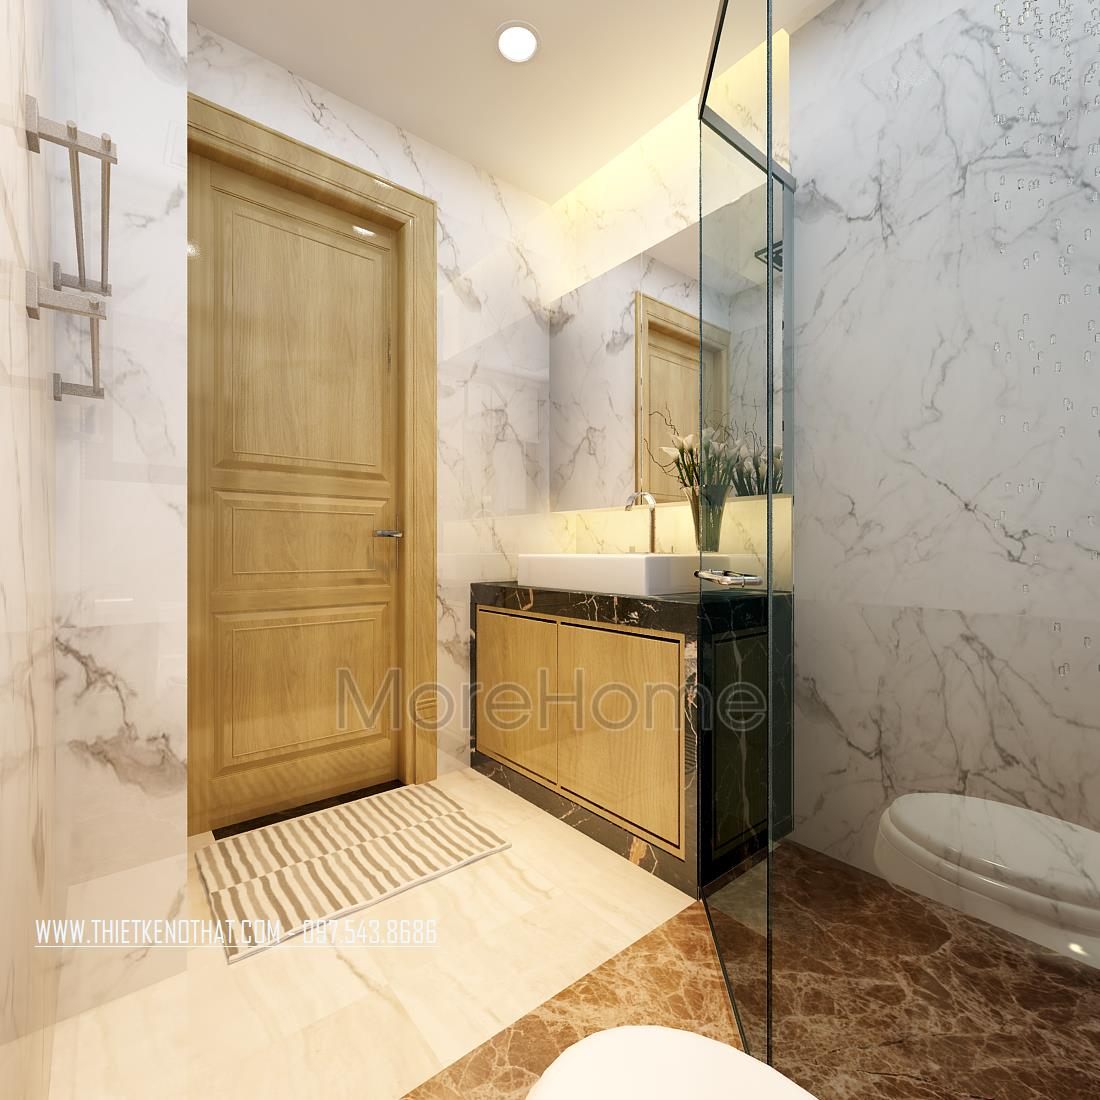 Thiết kế nội thất phòng tắm nhà phố Long Biên